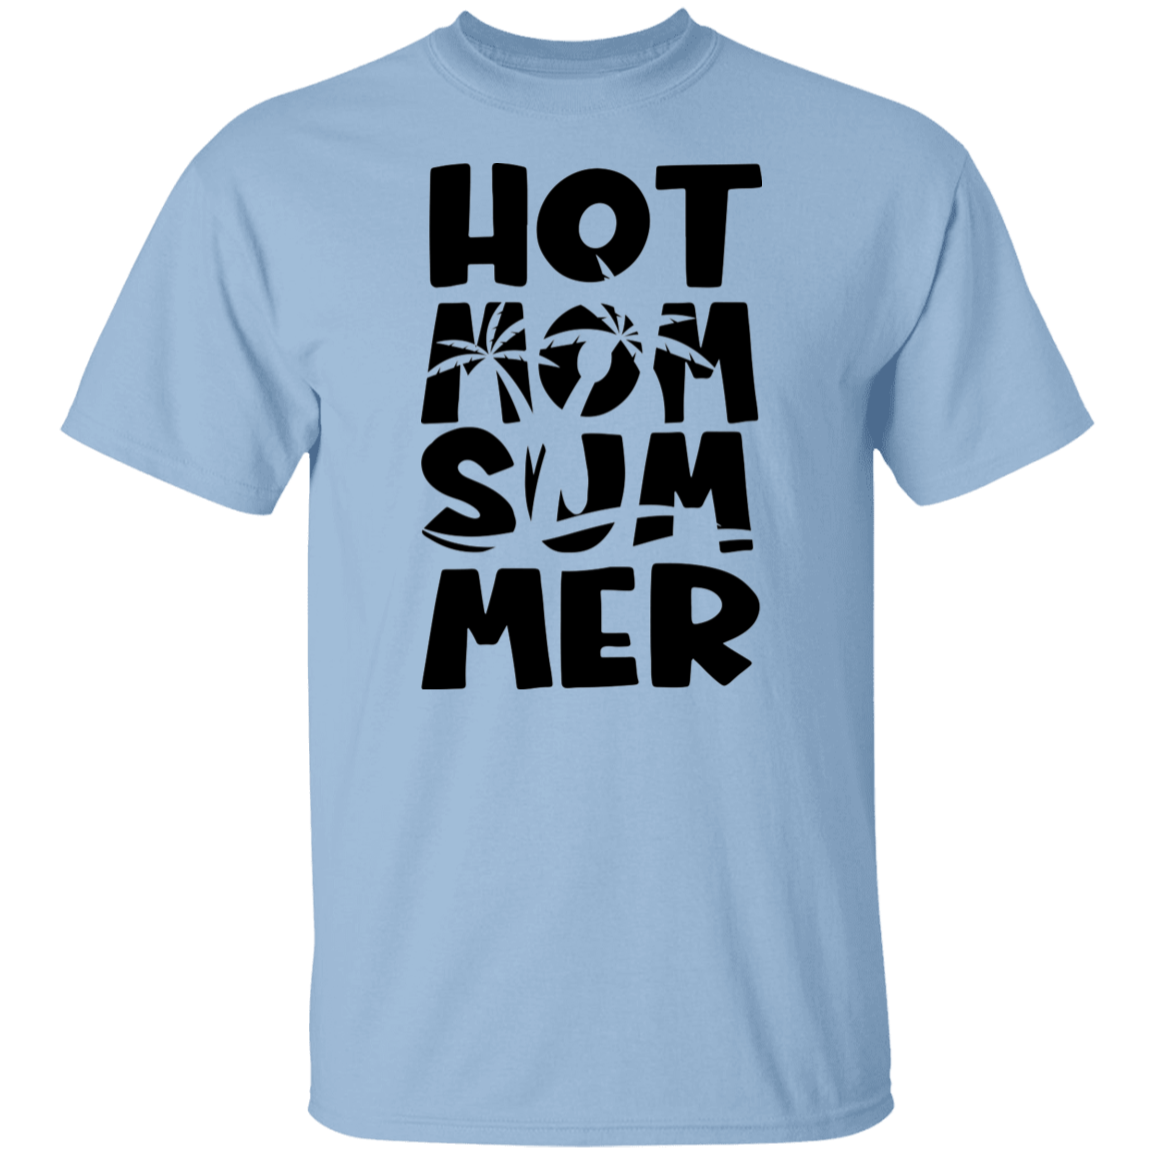 Hot Mom Summer 2 T-Shirt